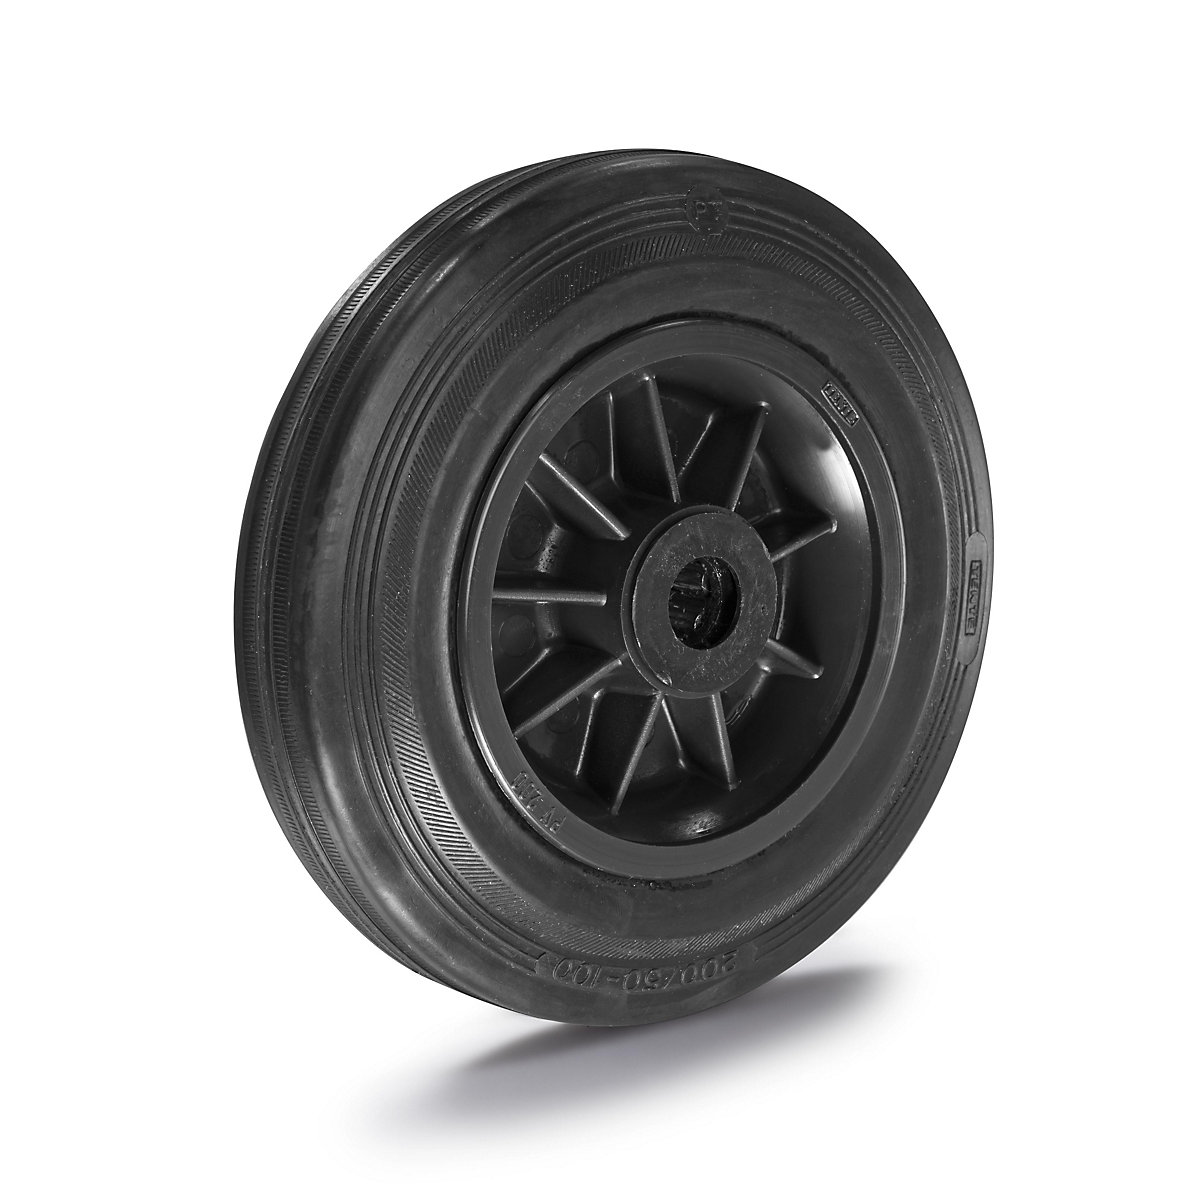 Solid rubber wheel, plastic rim – TENTE